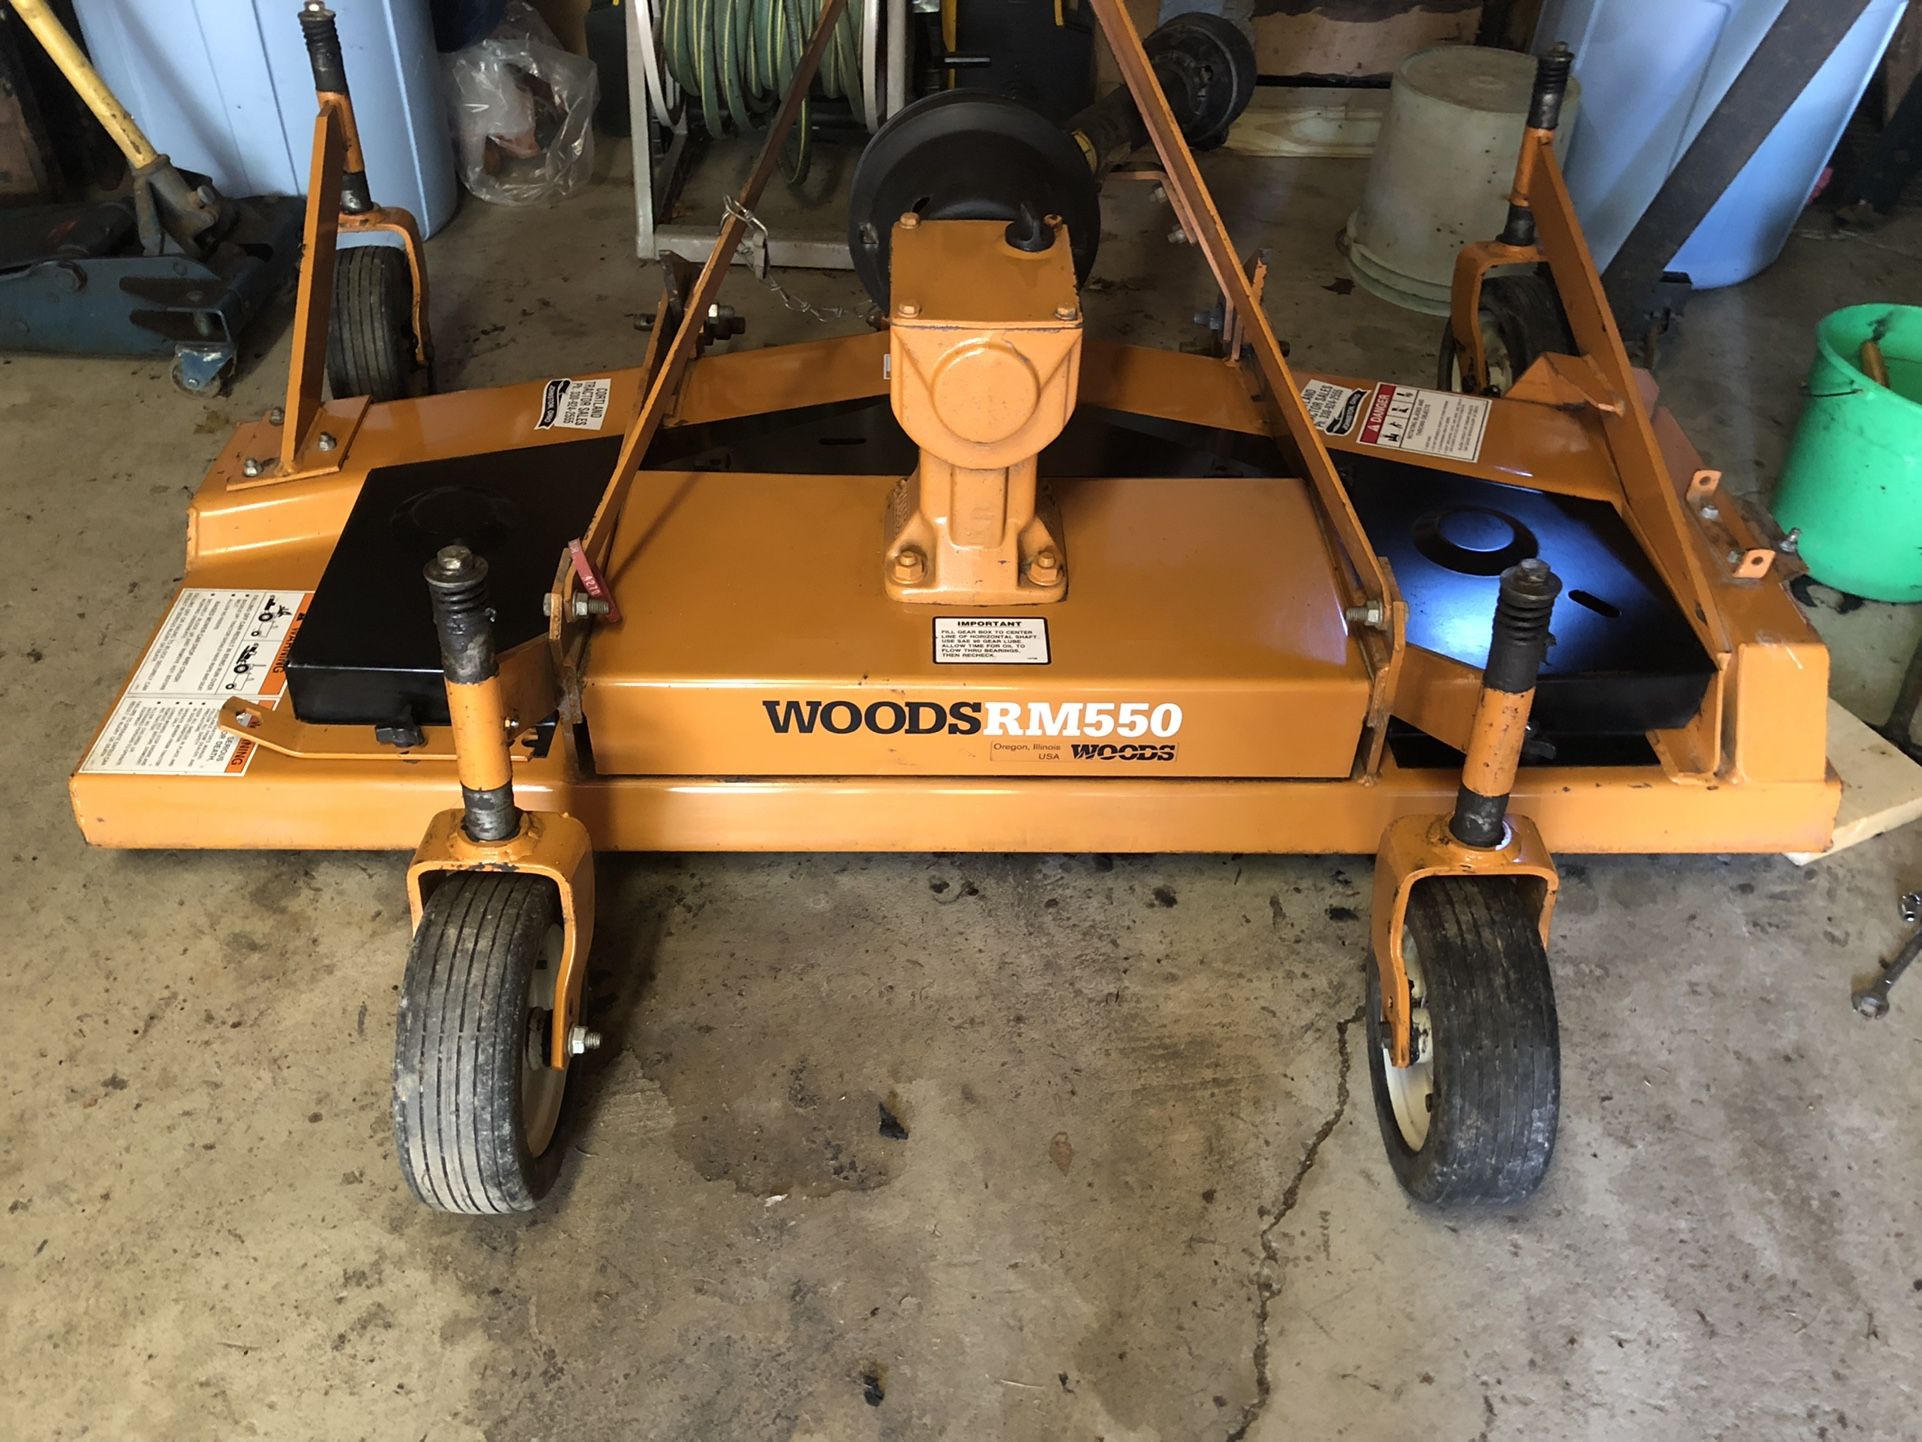 Woods 5Ft finish mower  Model RM550